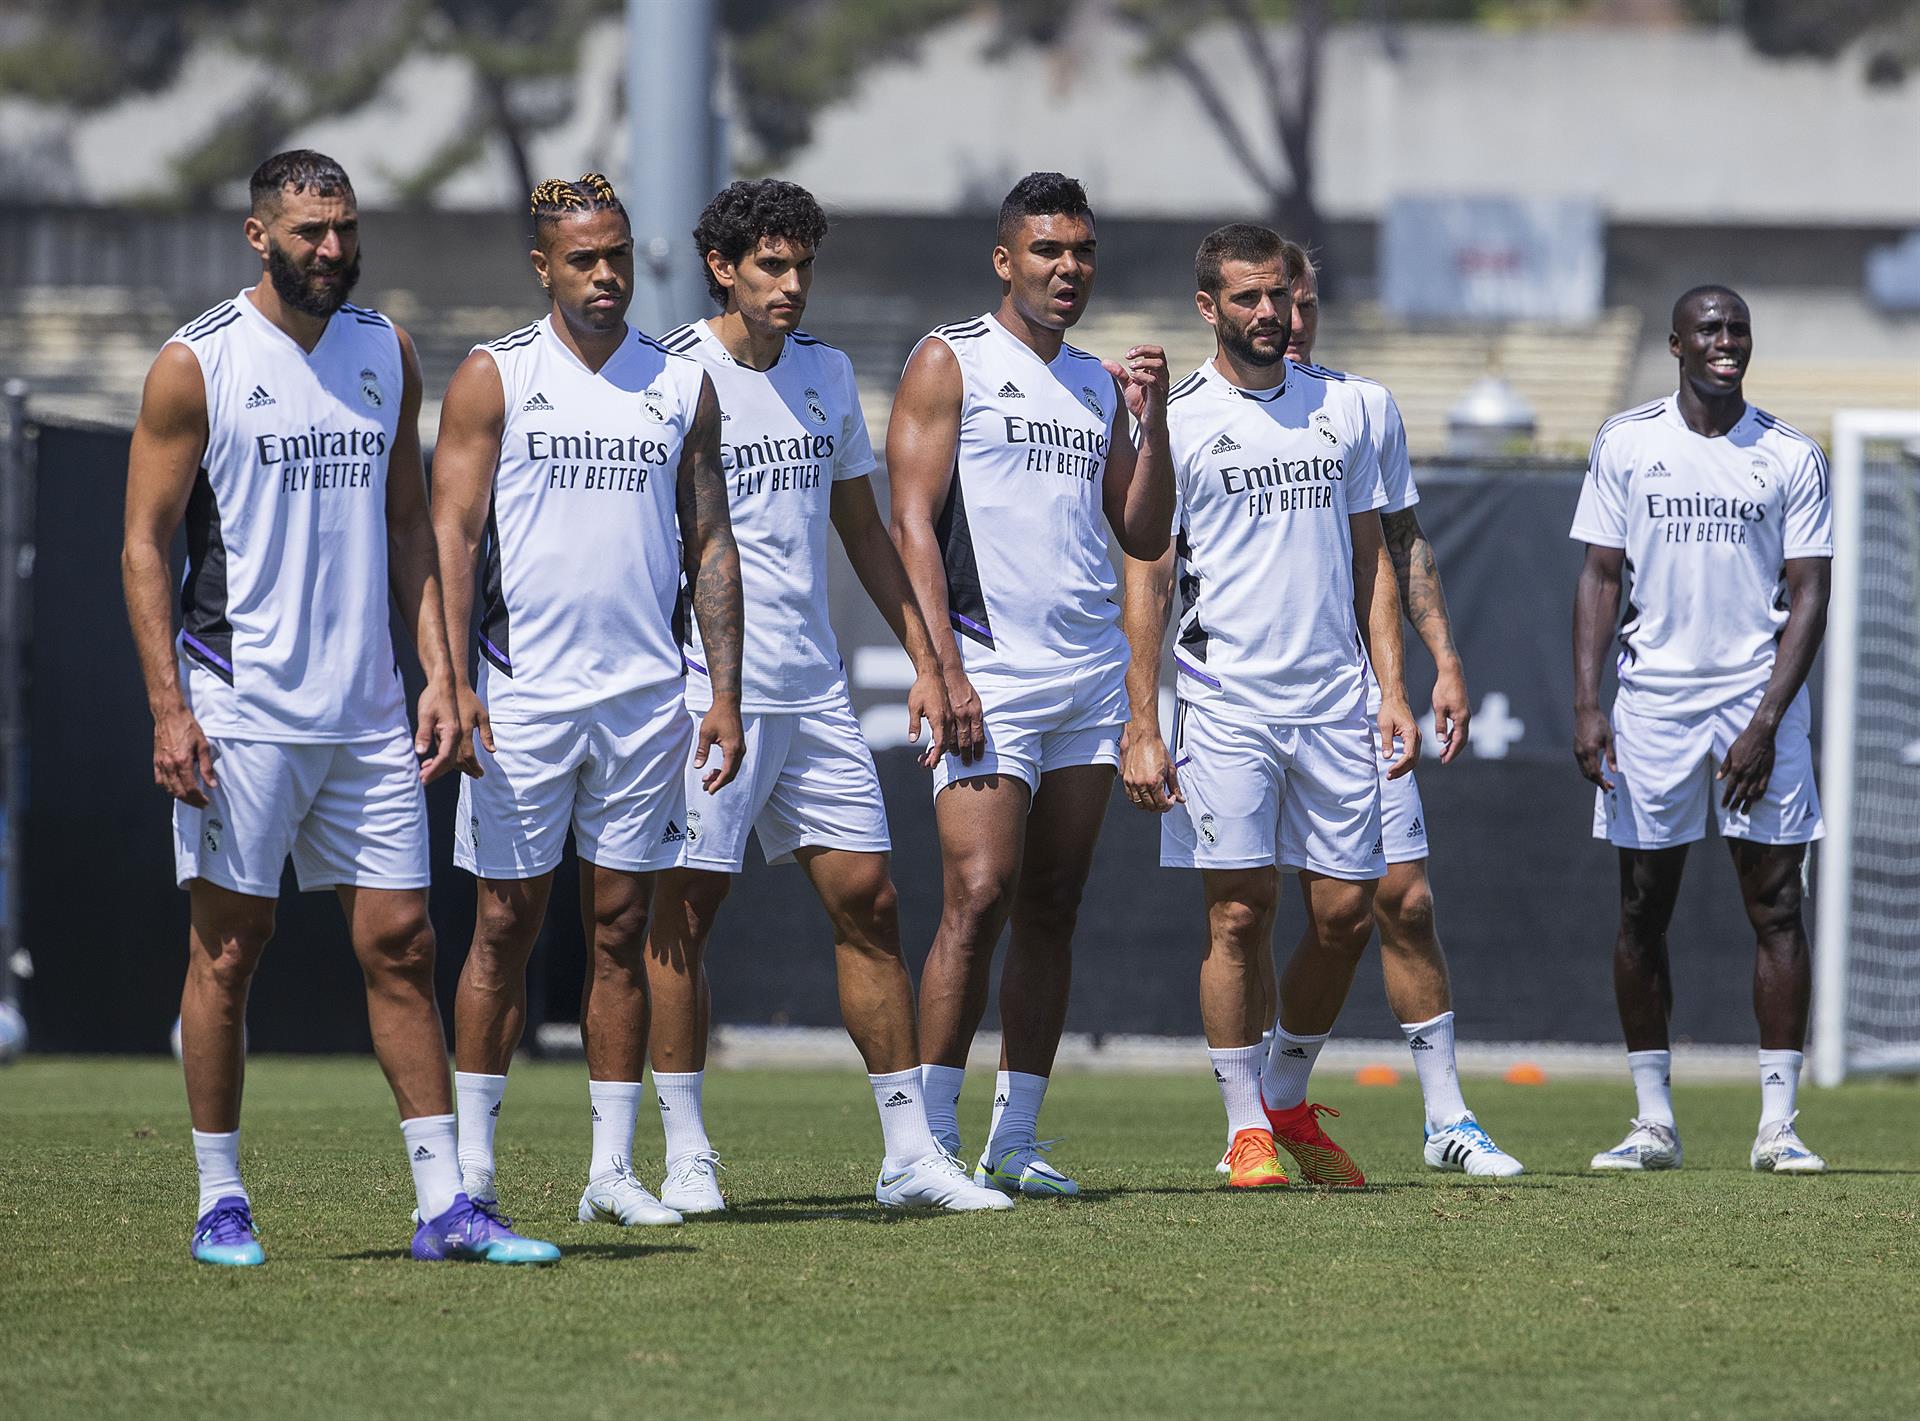 Jugadores del Real Madrid durante un entrenamiento en las instalaciones de la universidad UCLA en Los Ángeles, California (EE.UU.), este 22 de julio de 2022. EFE/Javier Rojas
